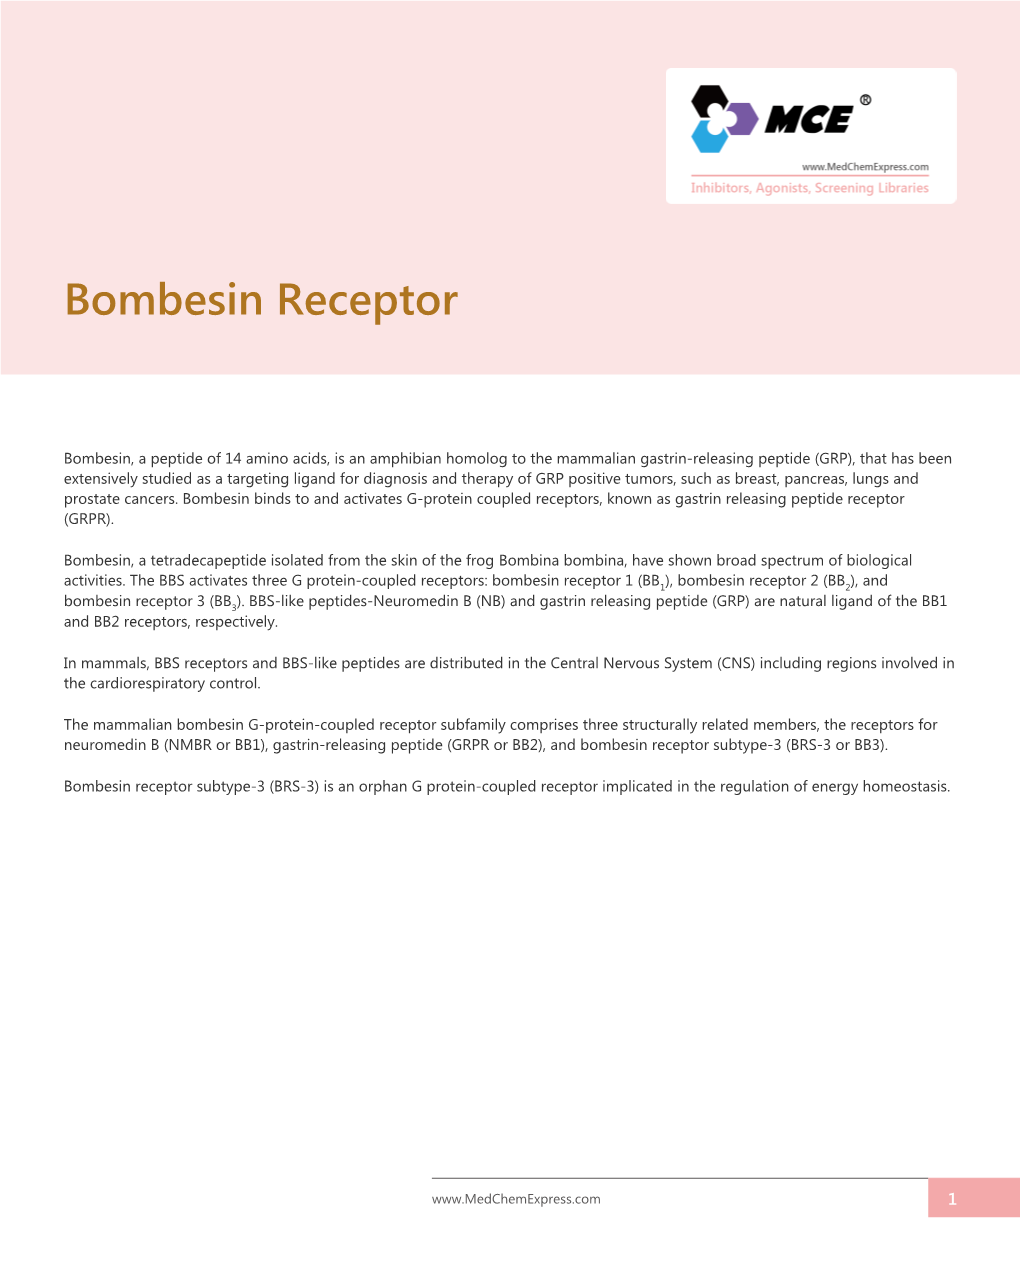 Bombesin Receptor